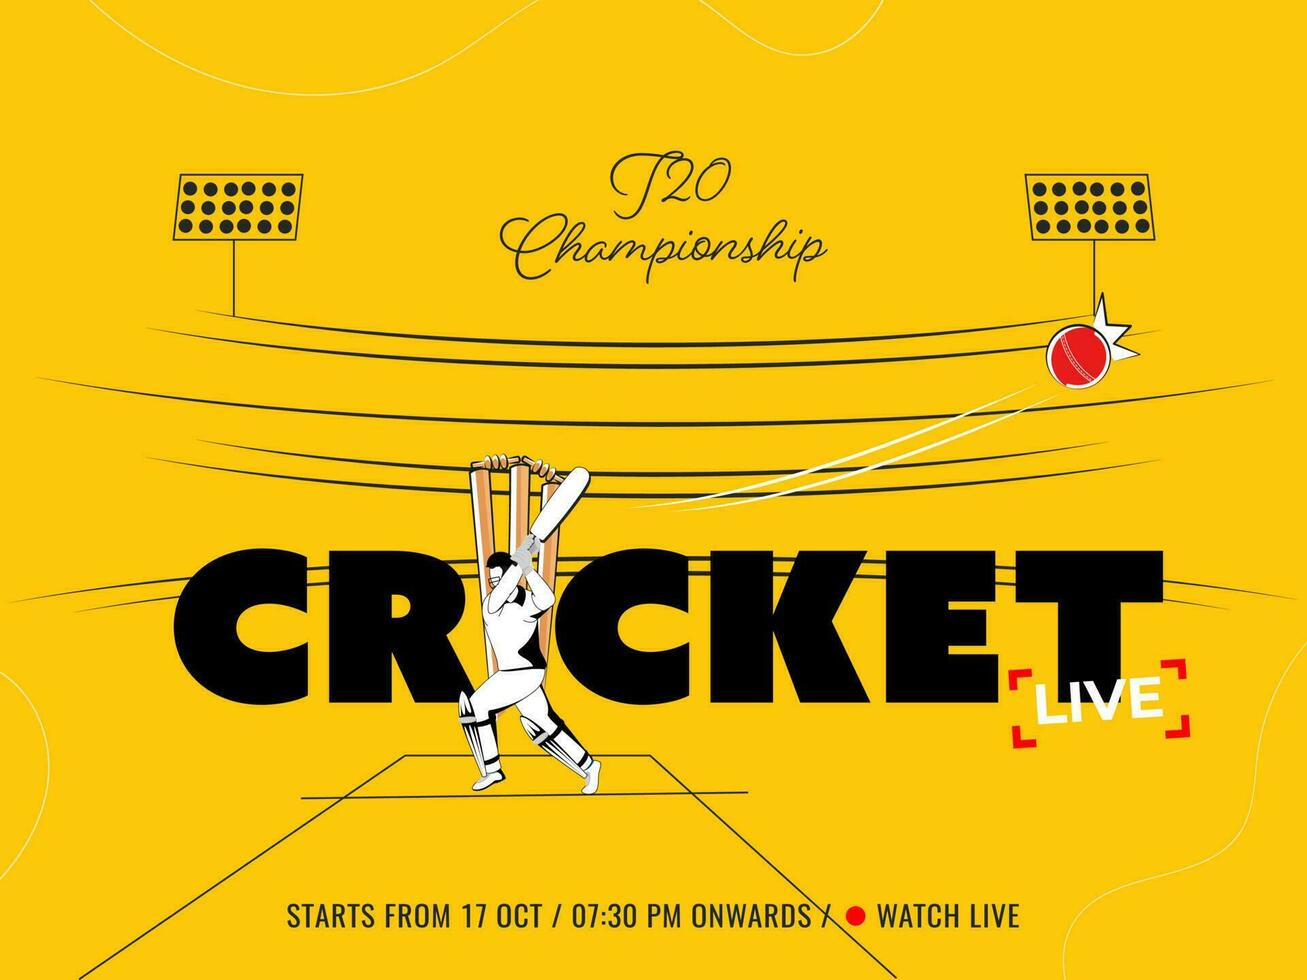 leva t20 cricket mästerskap affisch design med slagman spelare på gul stadion bakgrund. vektor